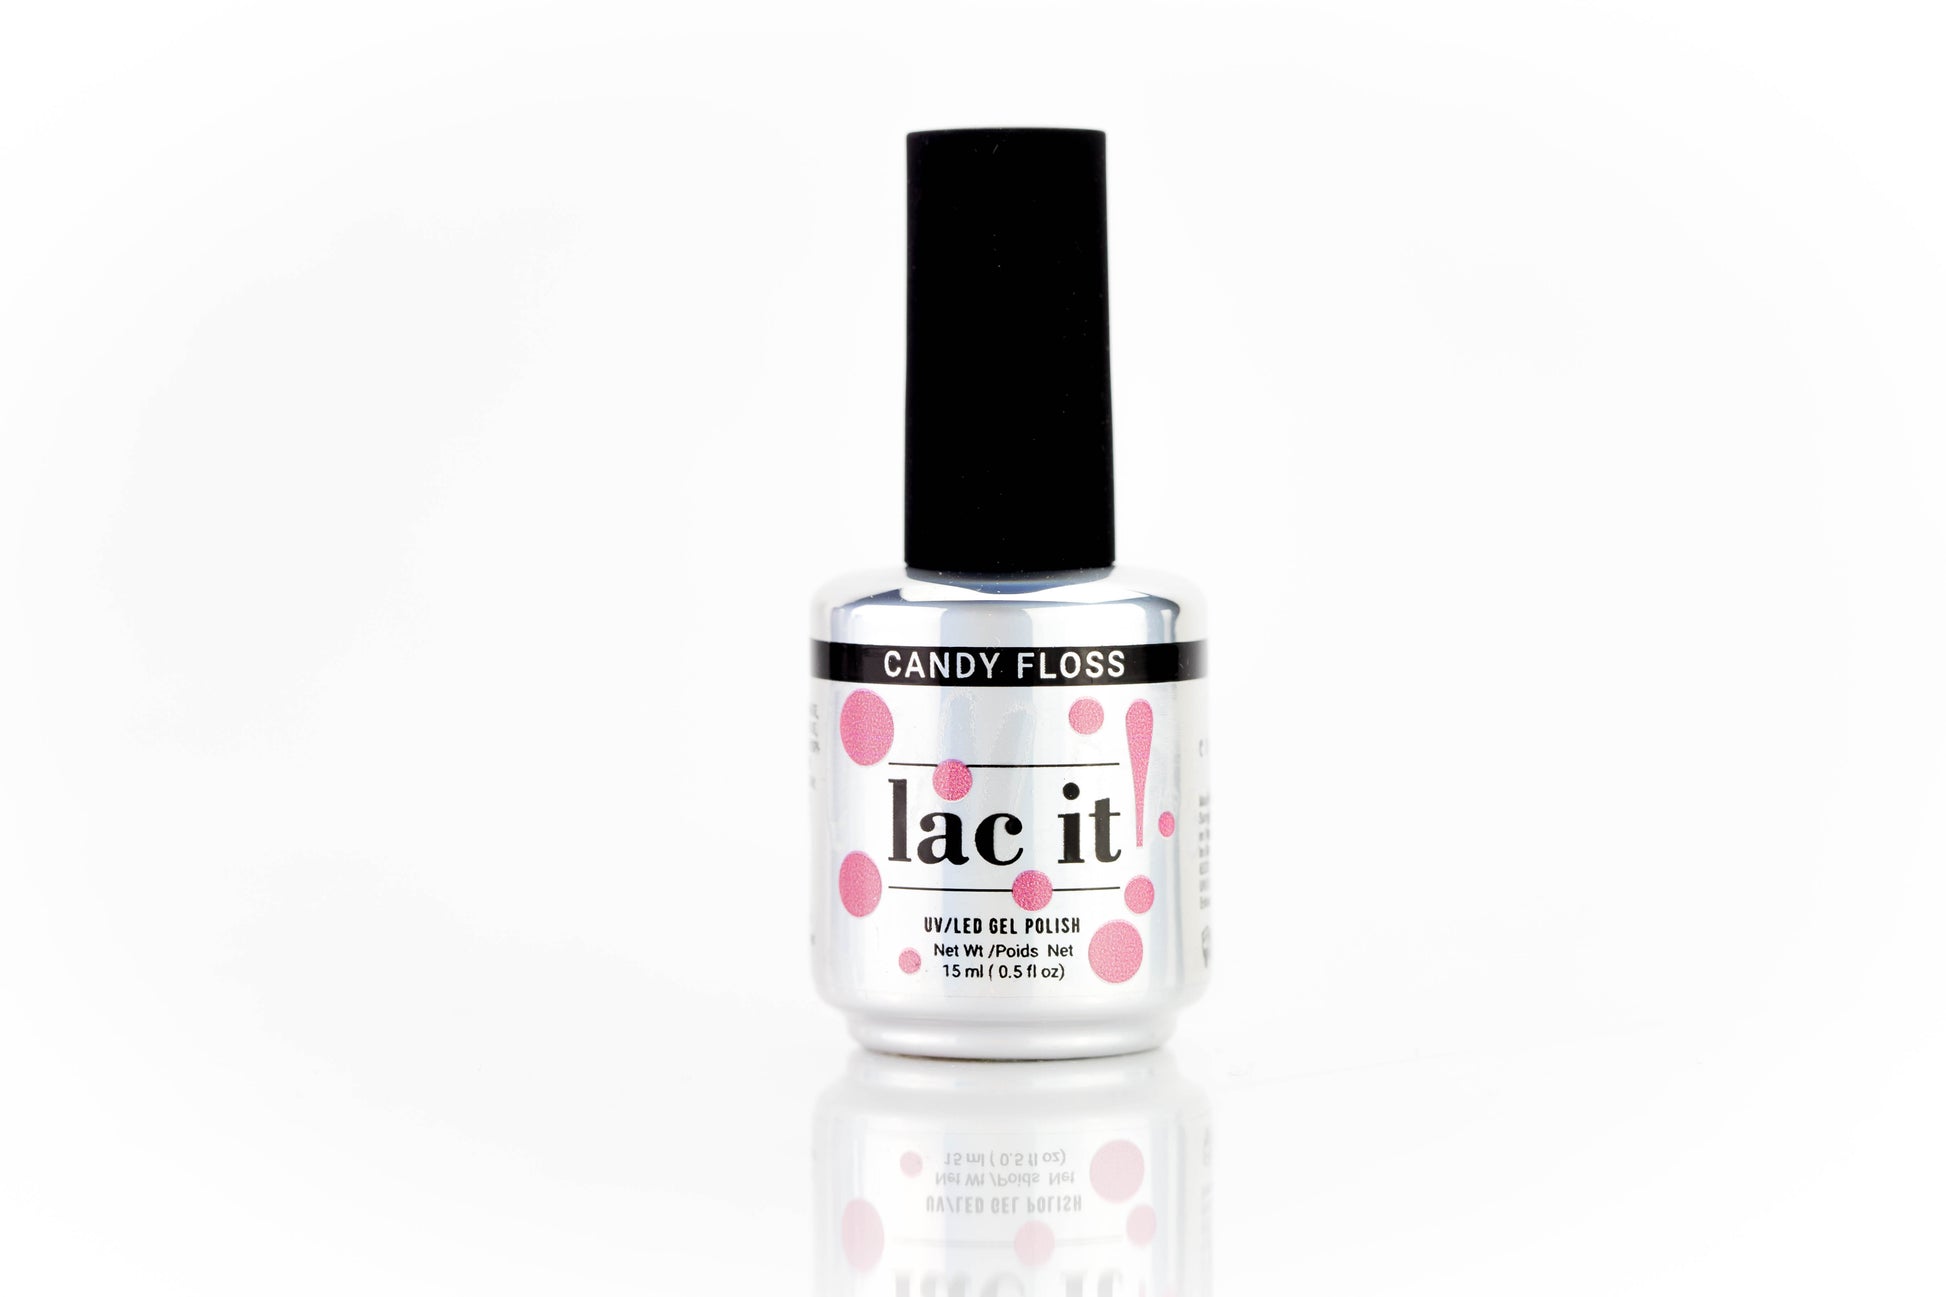 Lac It est un vernis gel de la marque En Vogue couleur Candy Floss (rose)